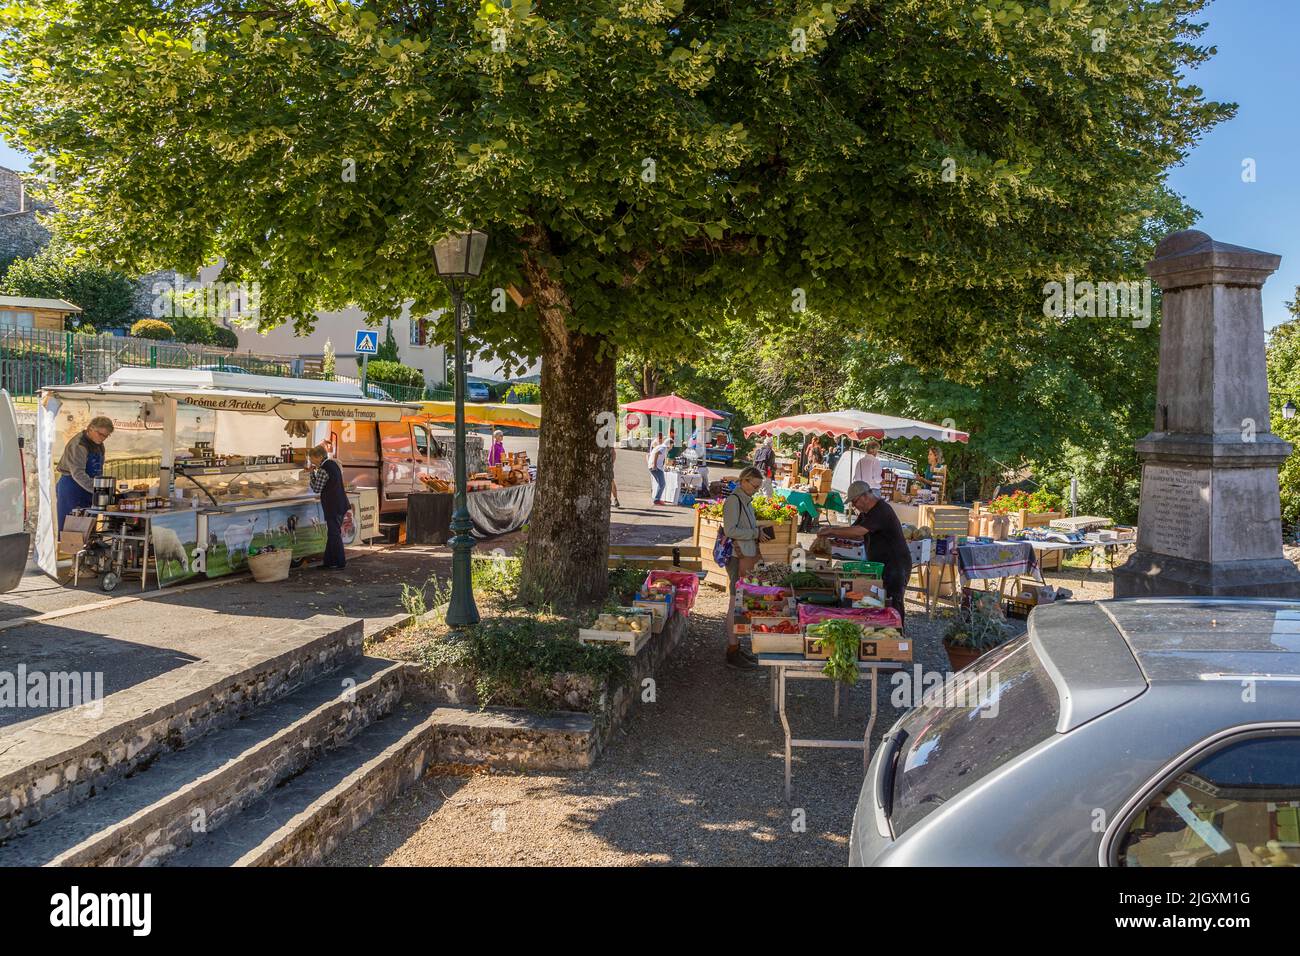 Semanalmente se lleva a cabo el mercado del productor en Plan-de-Baix (Die, Francia) Foto de stock